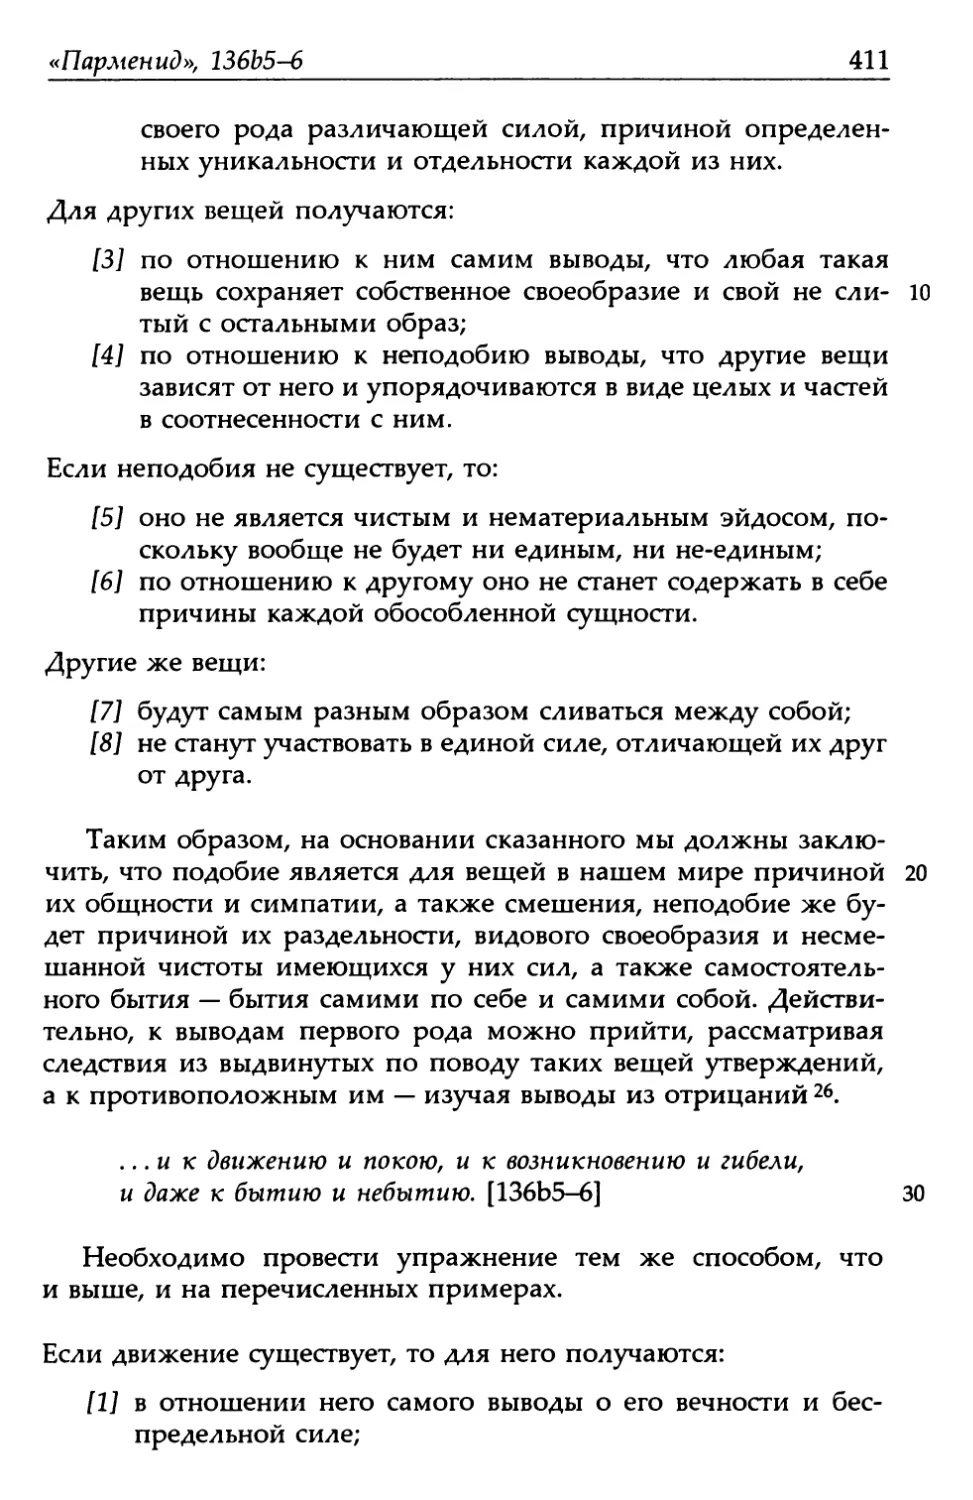 «Парменид», 136b5-6